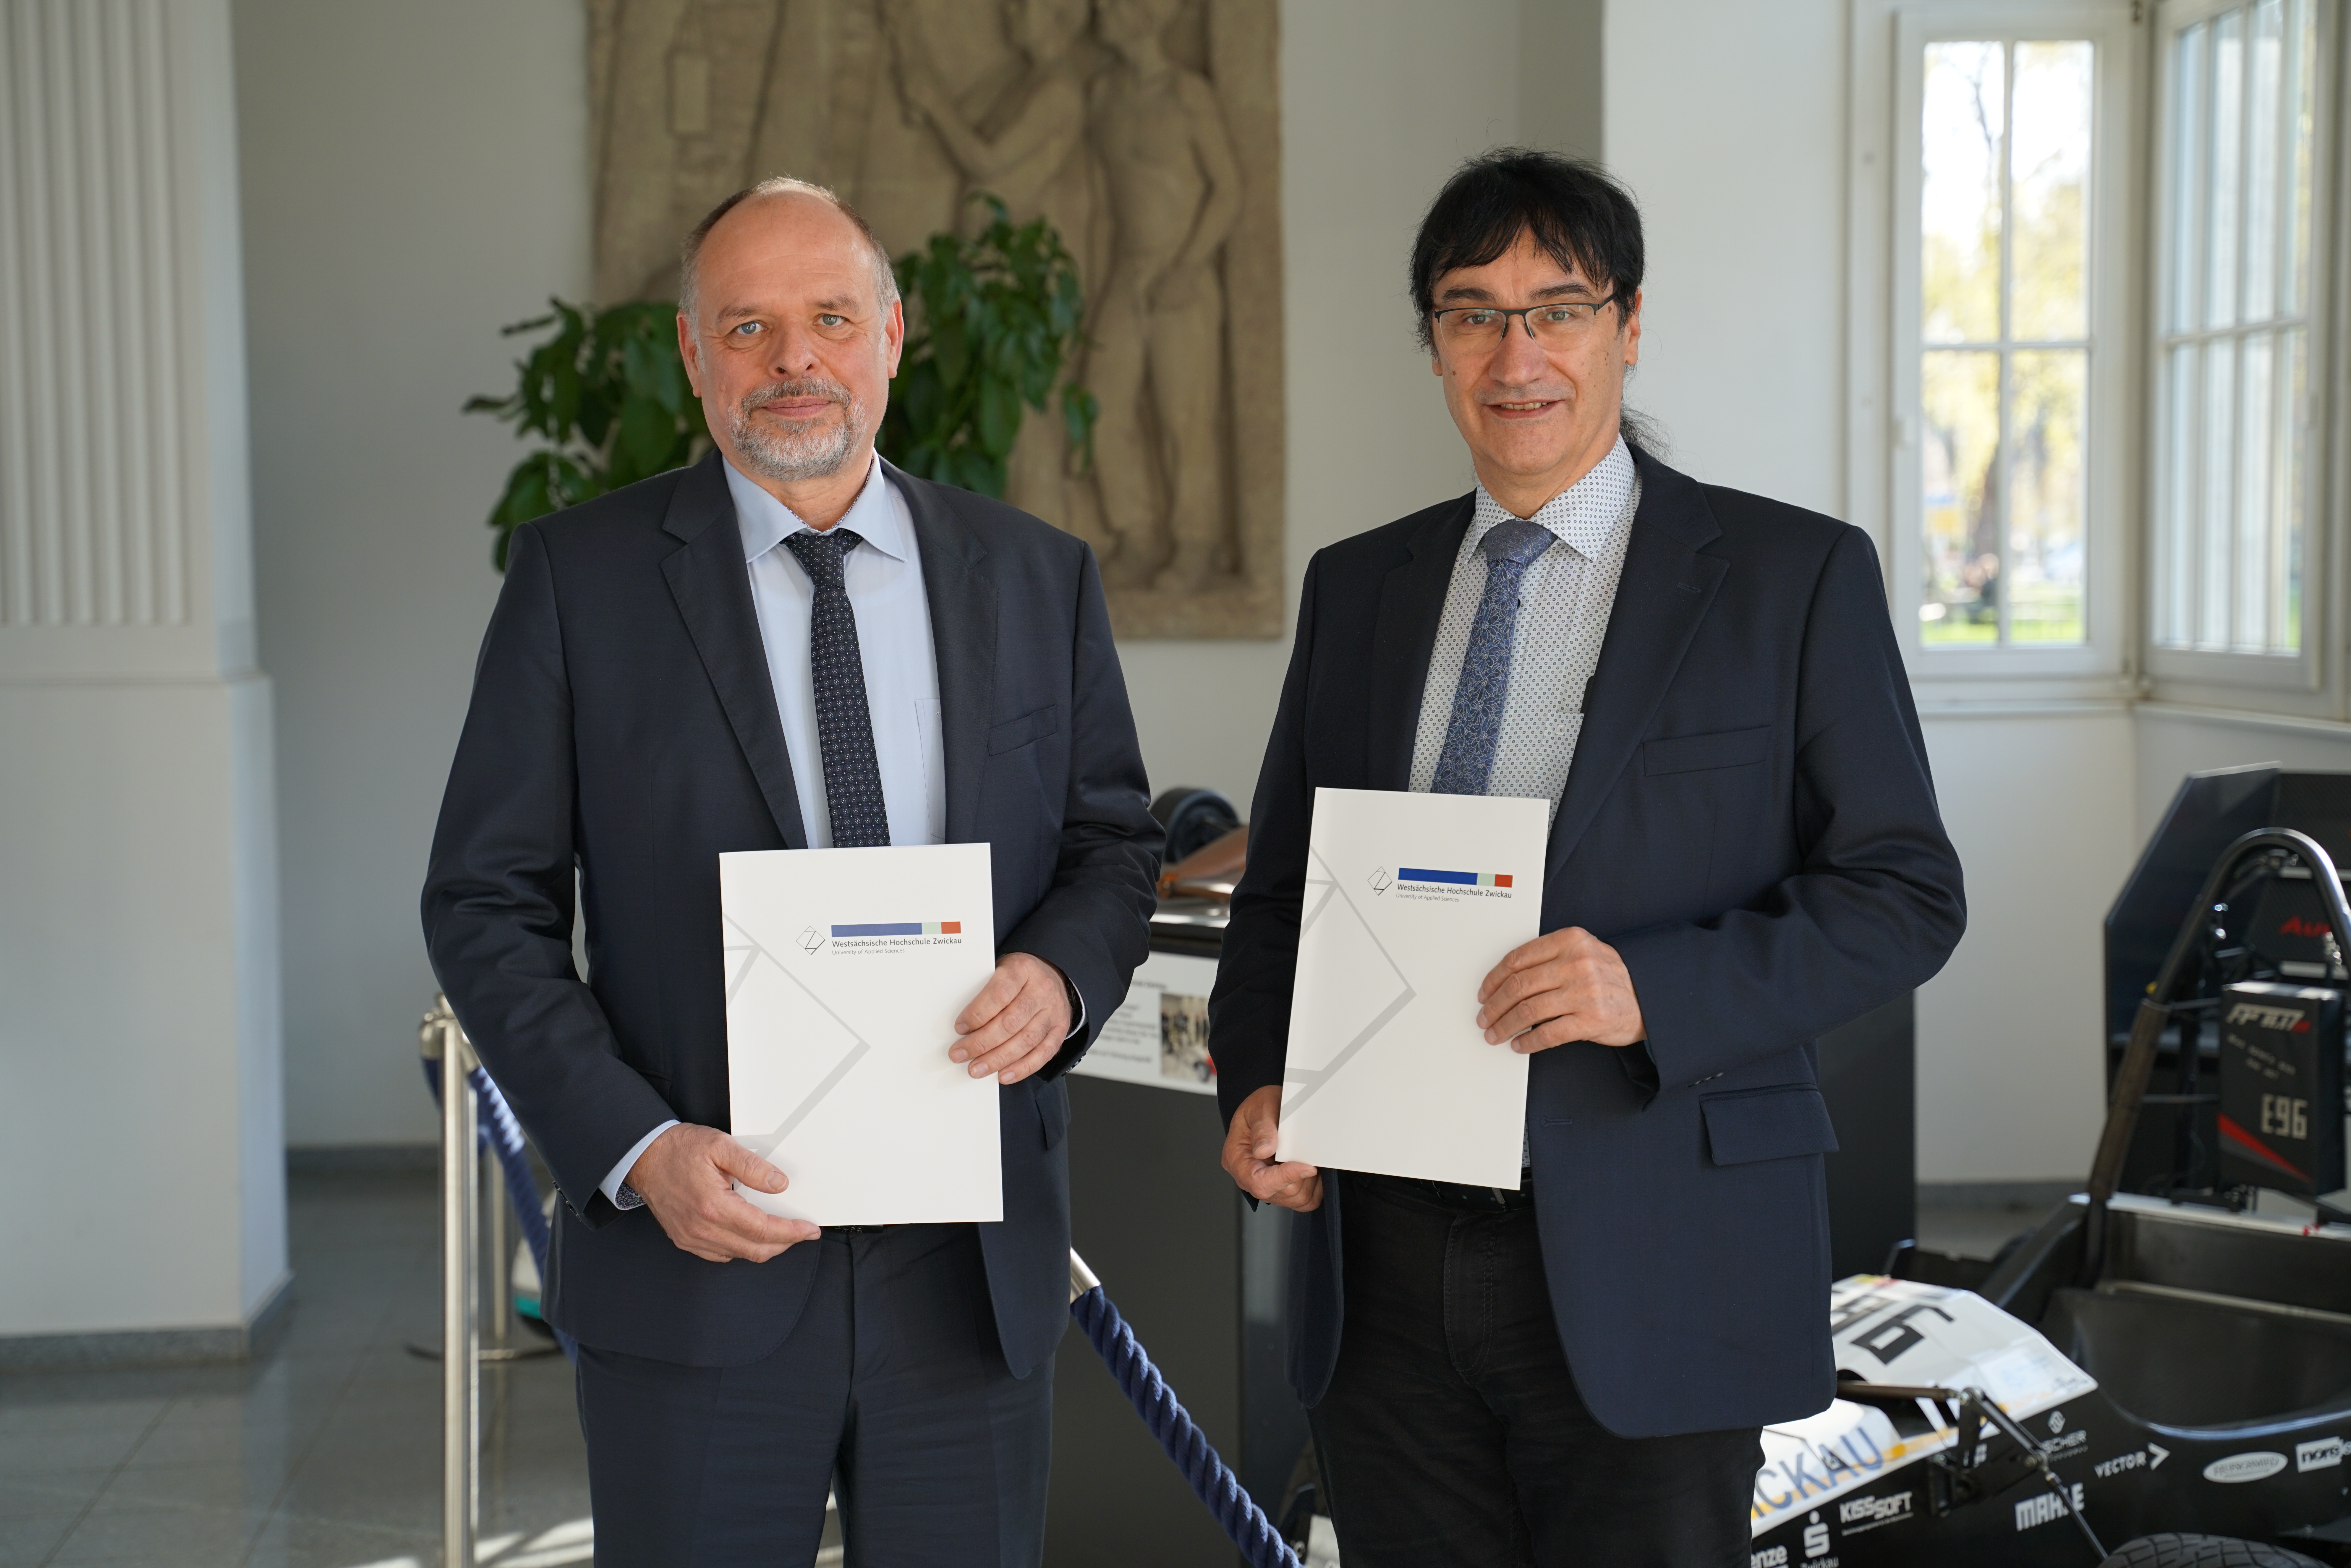 Rektor Prof. Kassel und Andreas Fleischer, Chef der Zwickauer Arbeitsagentur präsentieren die Urkunden mit der Kooperationsvereinbarung. 